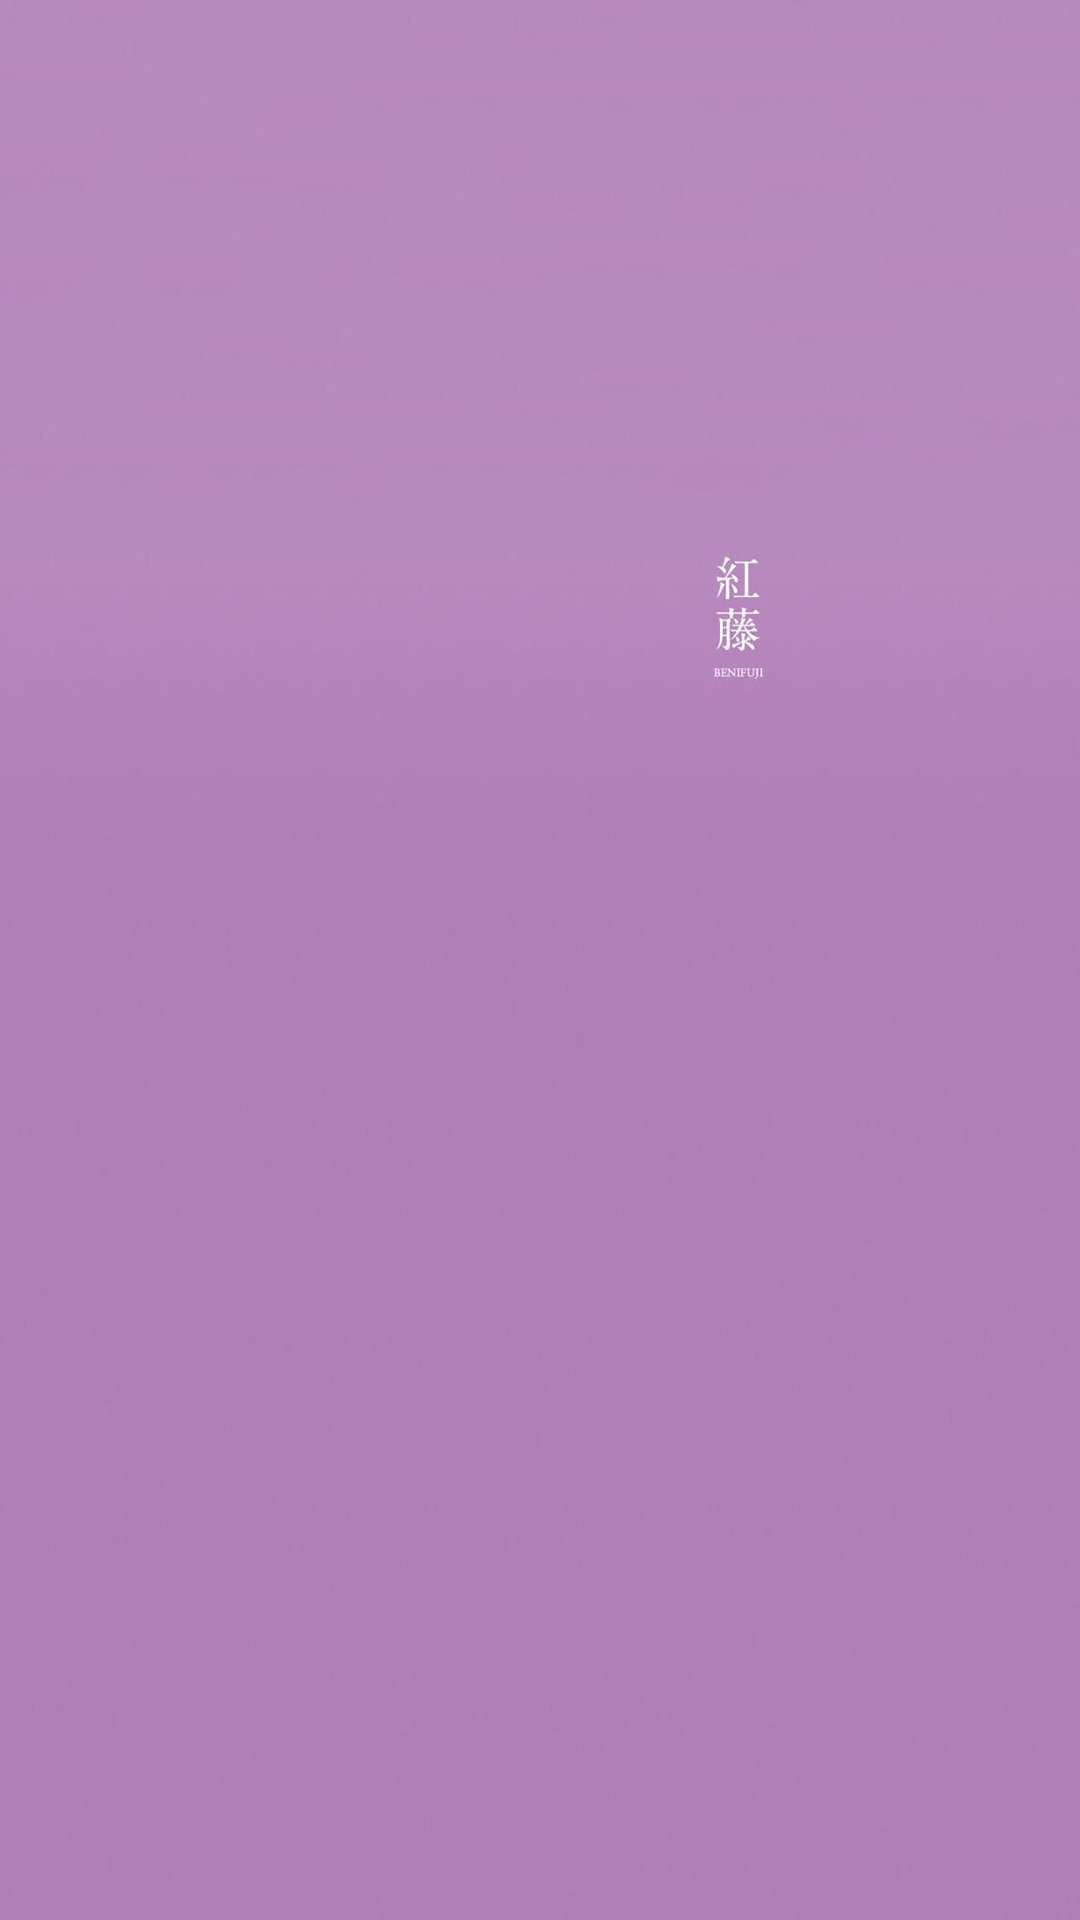 紫色系纯色背景手机壁纸 紫色系手机壁纸图片 三千图片网